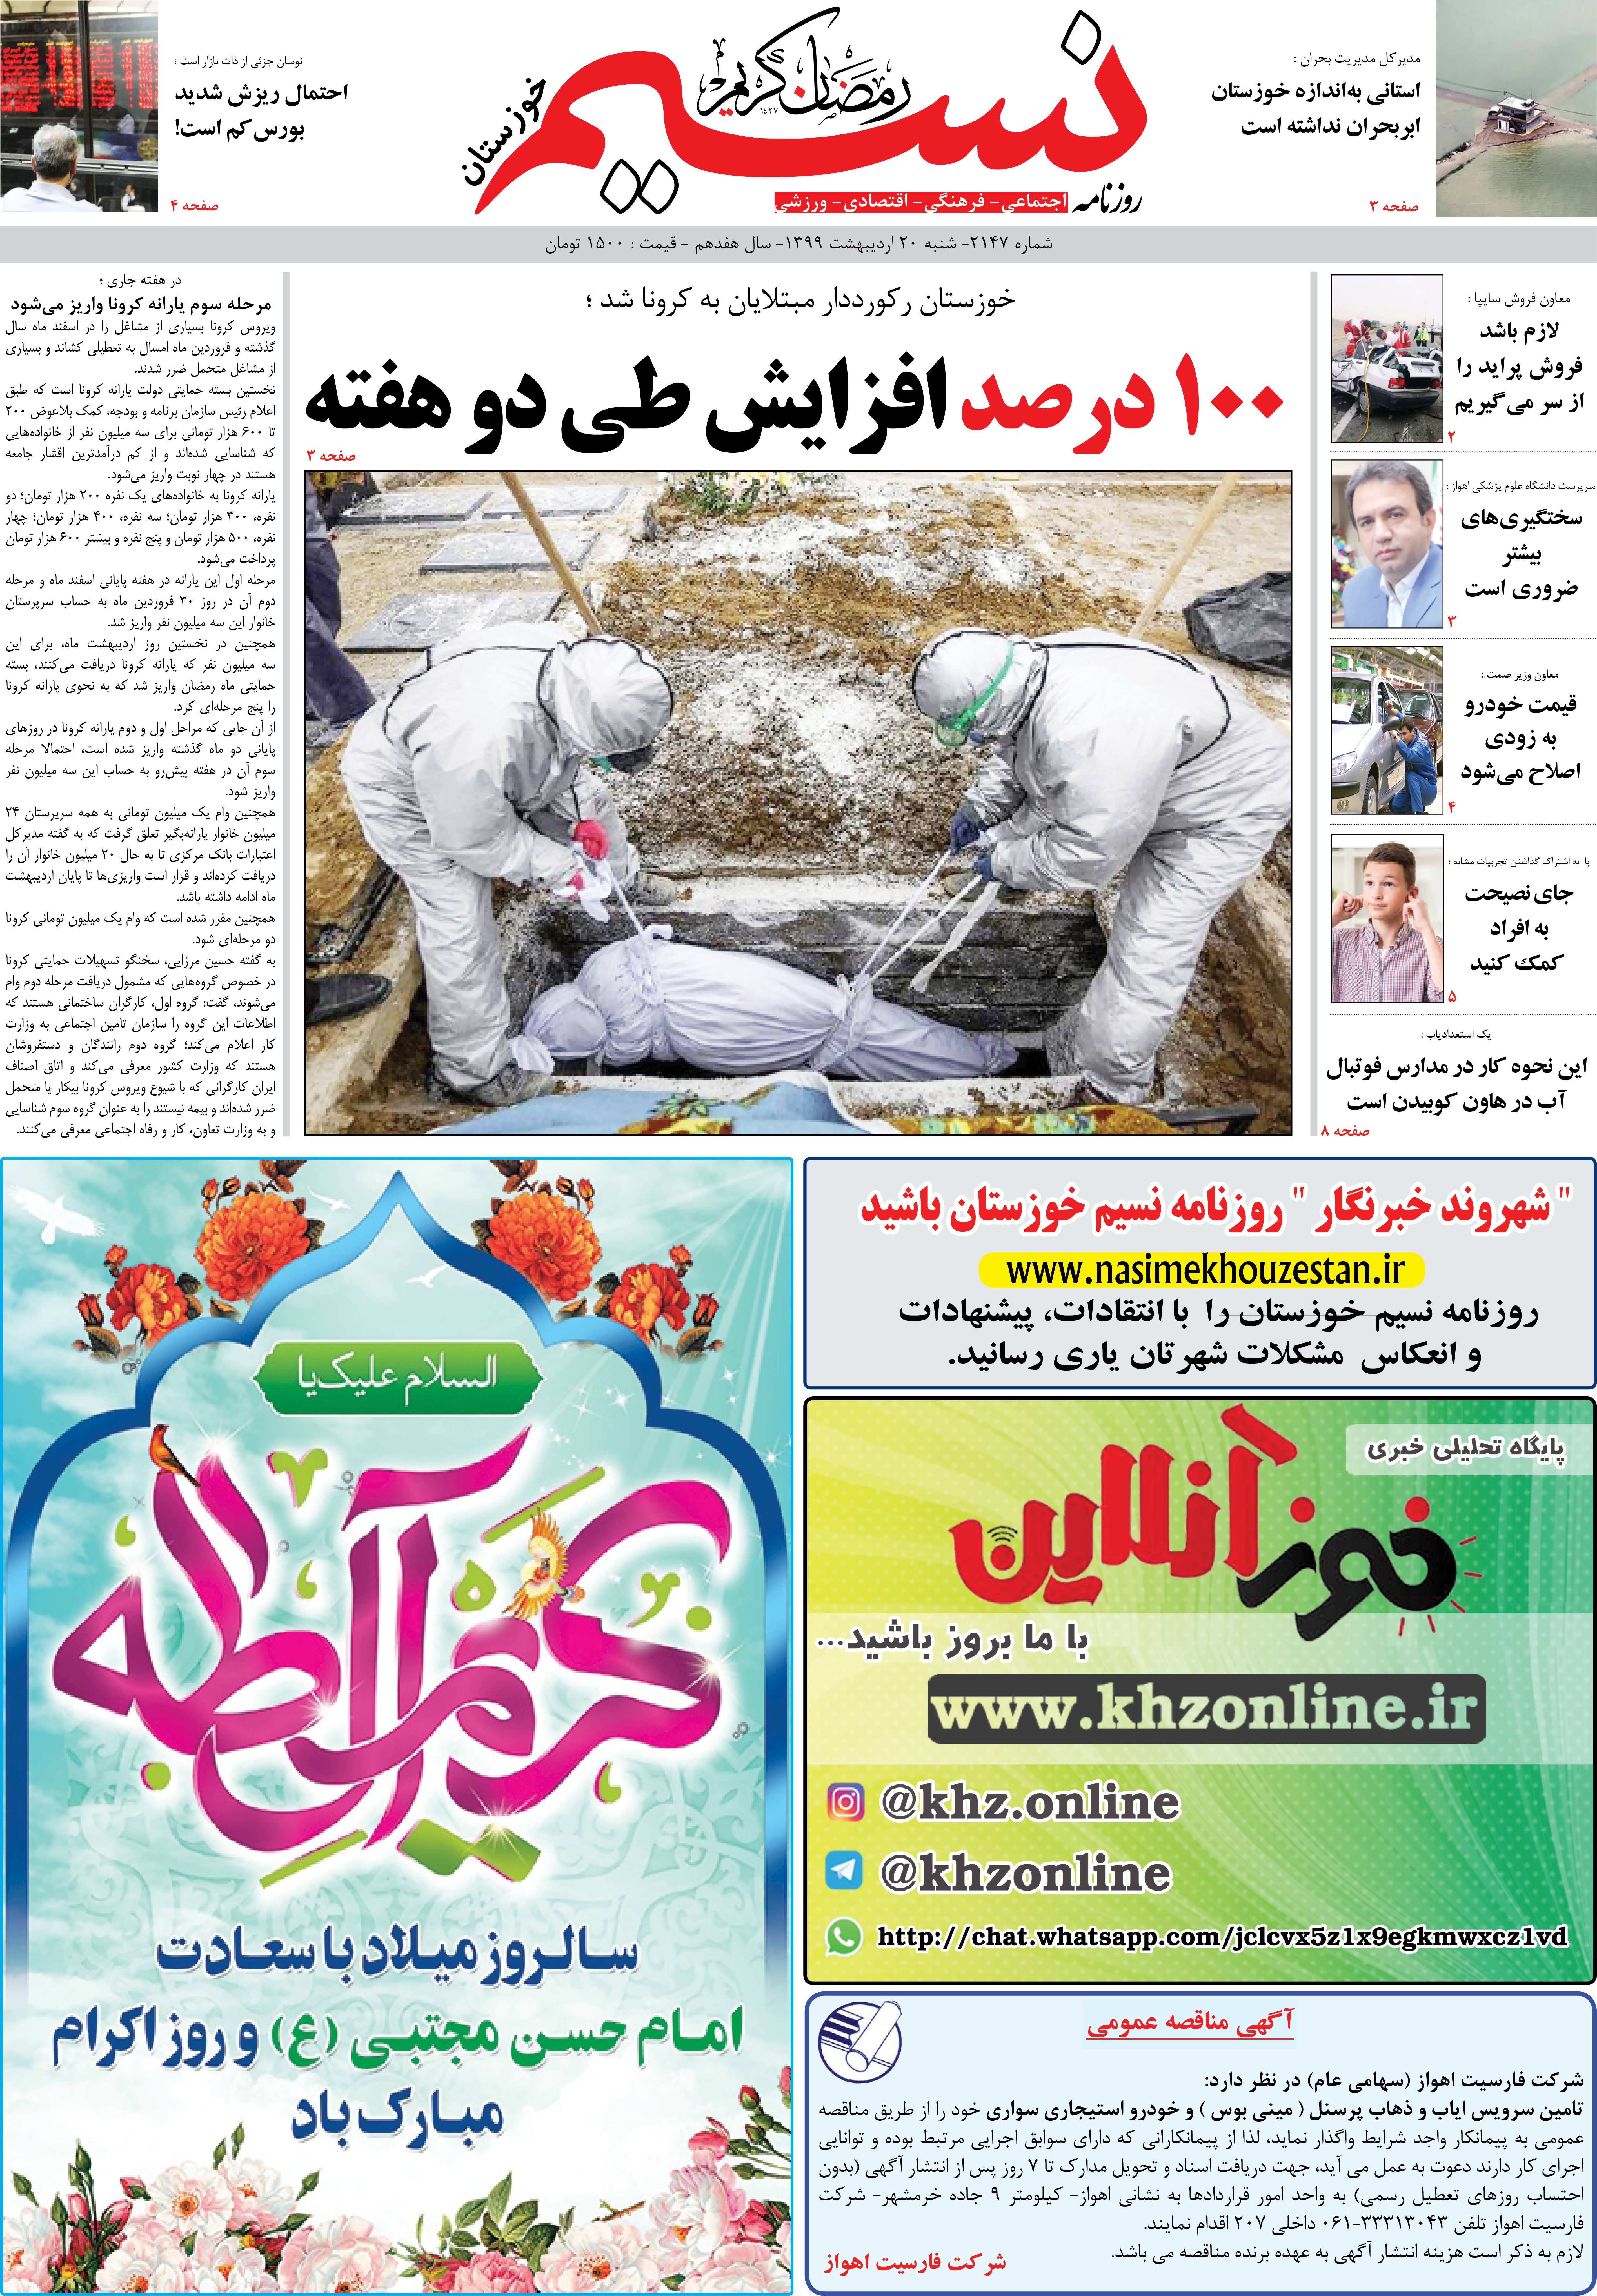 صفحه اصلی روزنامه نسیم شماره 2147 